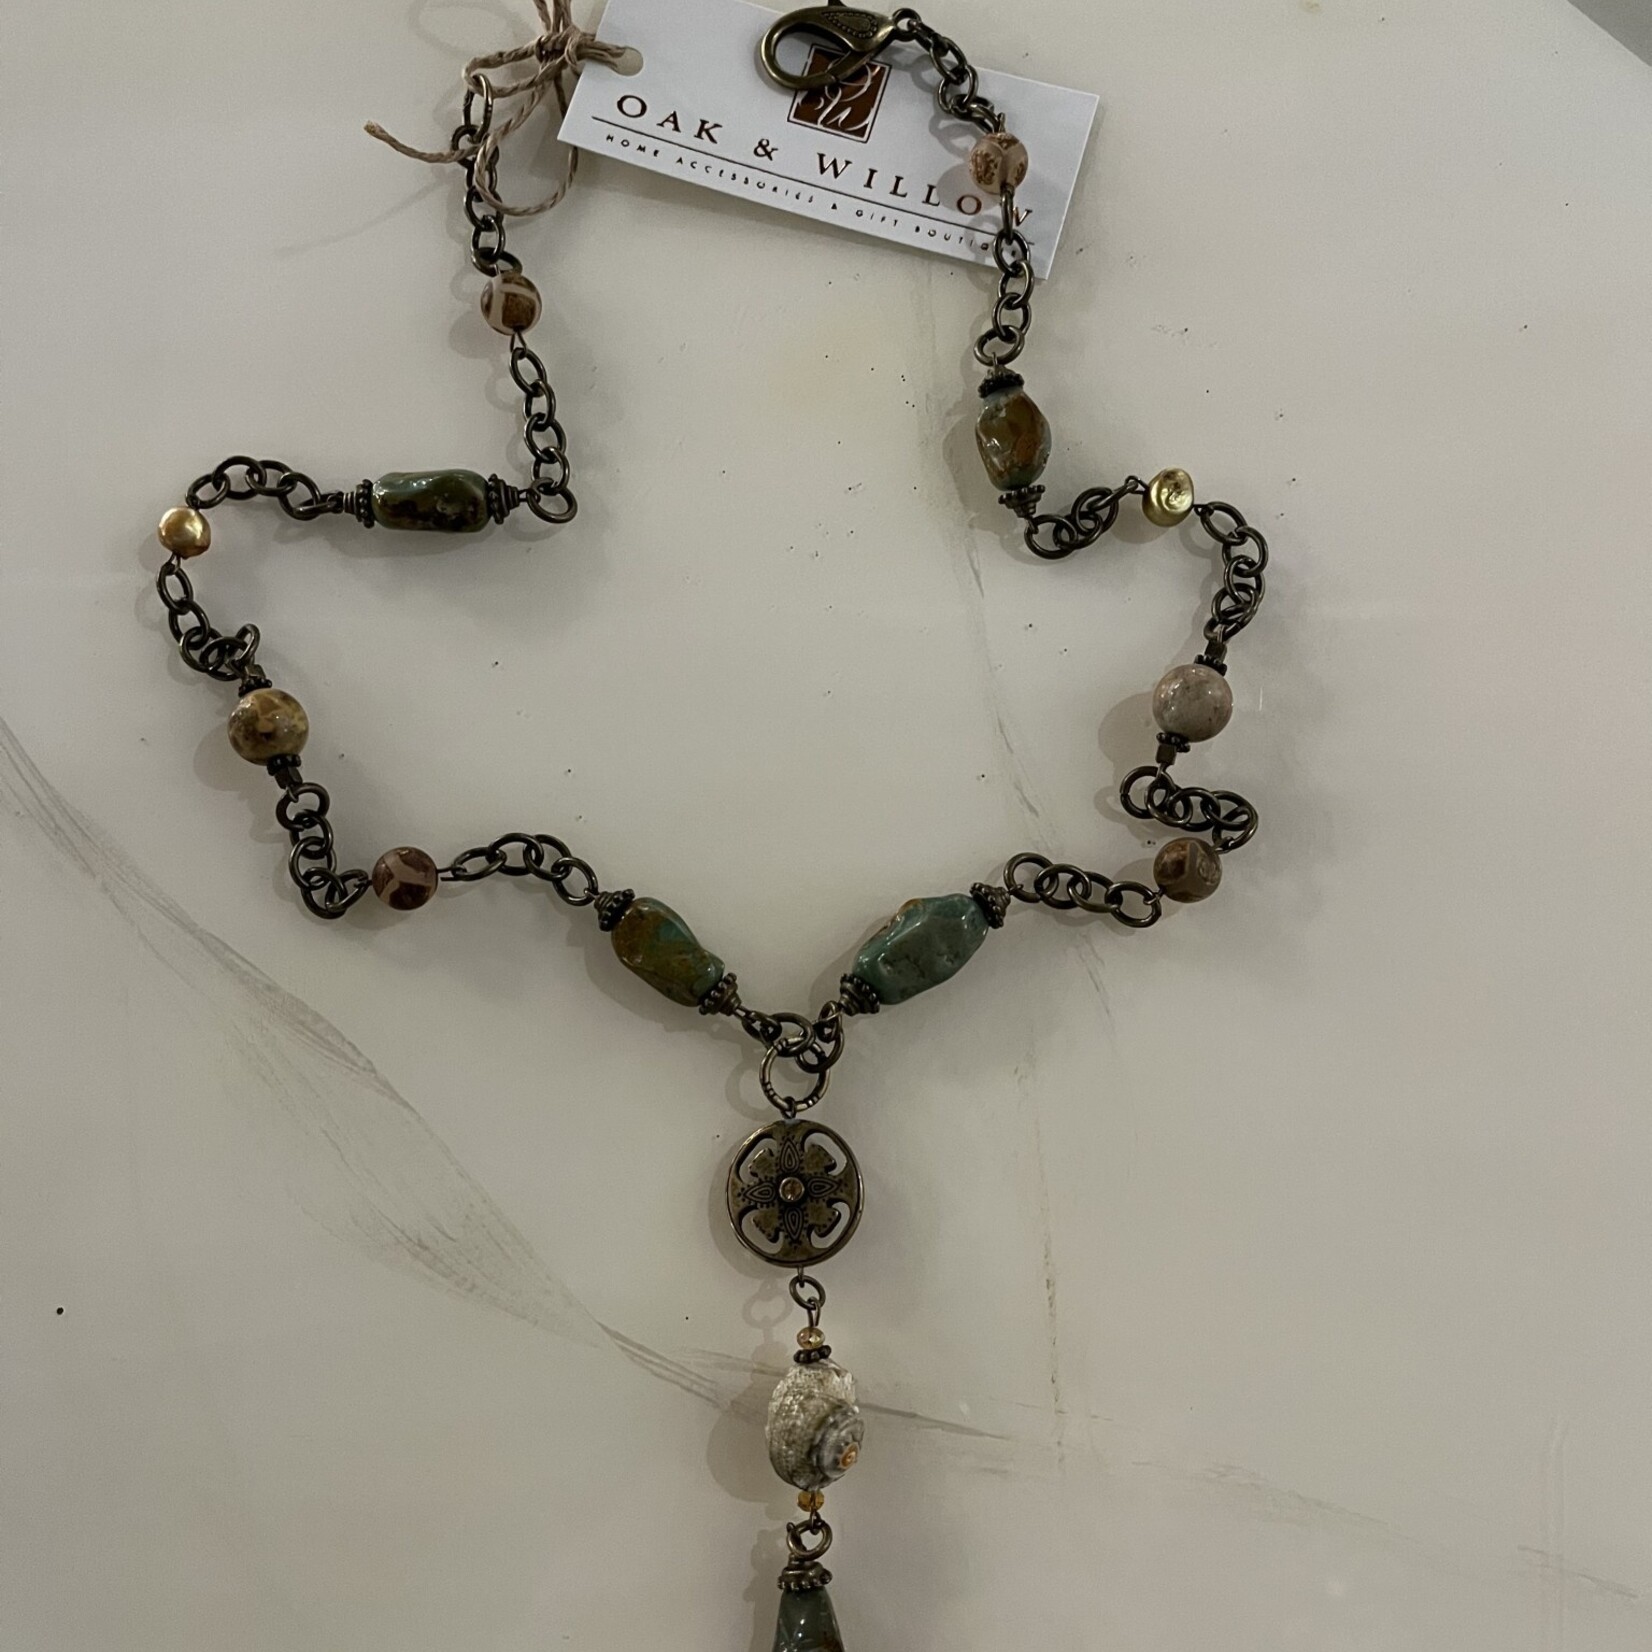 Alecia Bristow Hand Made - Natural Stone, Jasper Stone, Semi-Precious Beads, Gold Pearls, Bronze Pendant